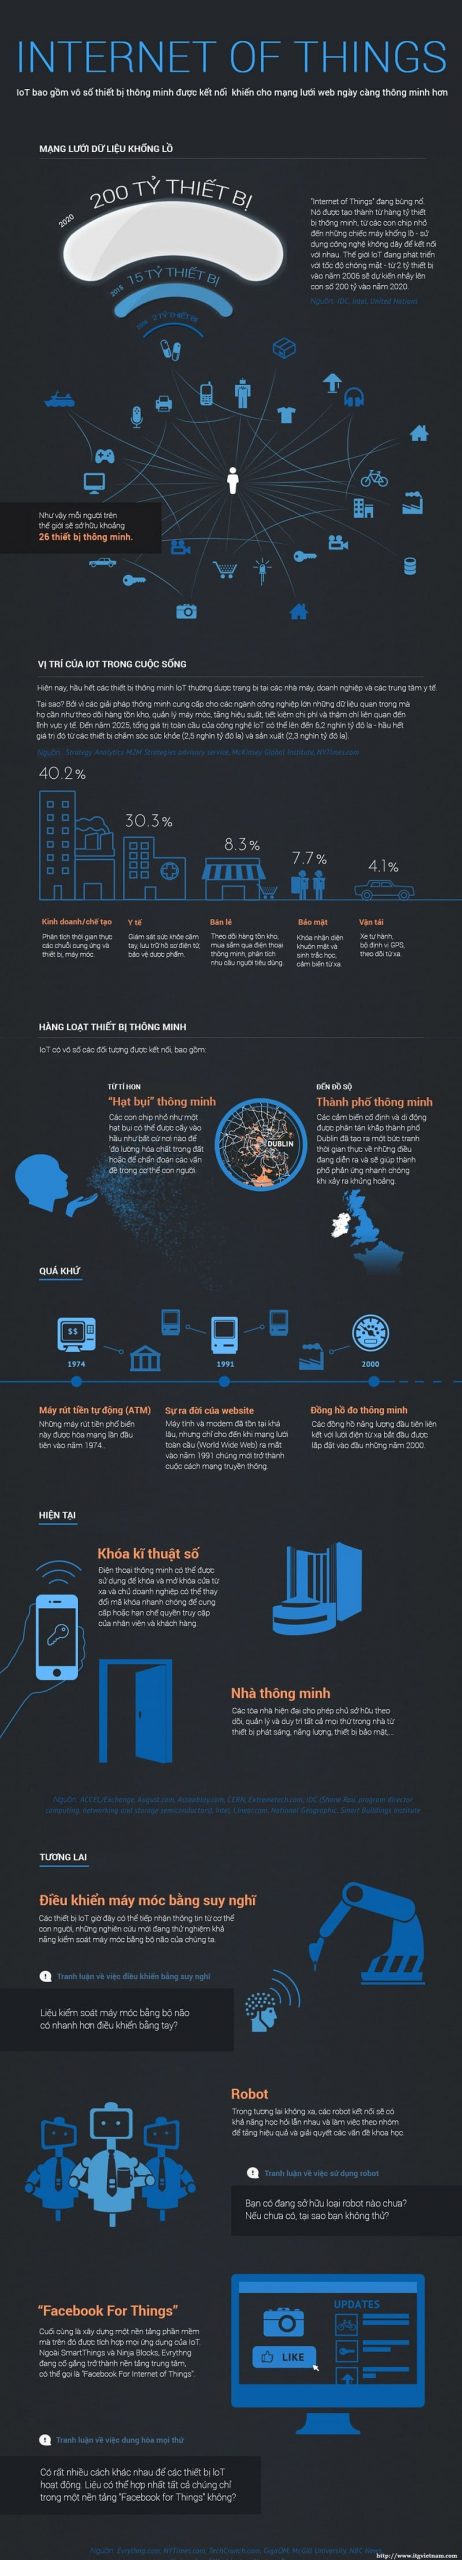 infographic su phat trien cua iot den nam 2020 - Infographic: IoT sẽ làm thay đổi cơ bản thế giới như thế nào trong năm 2020?